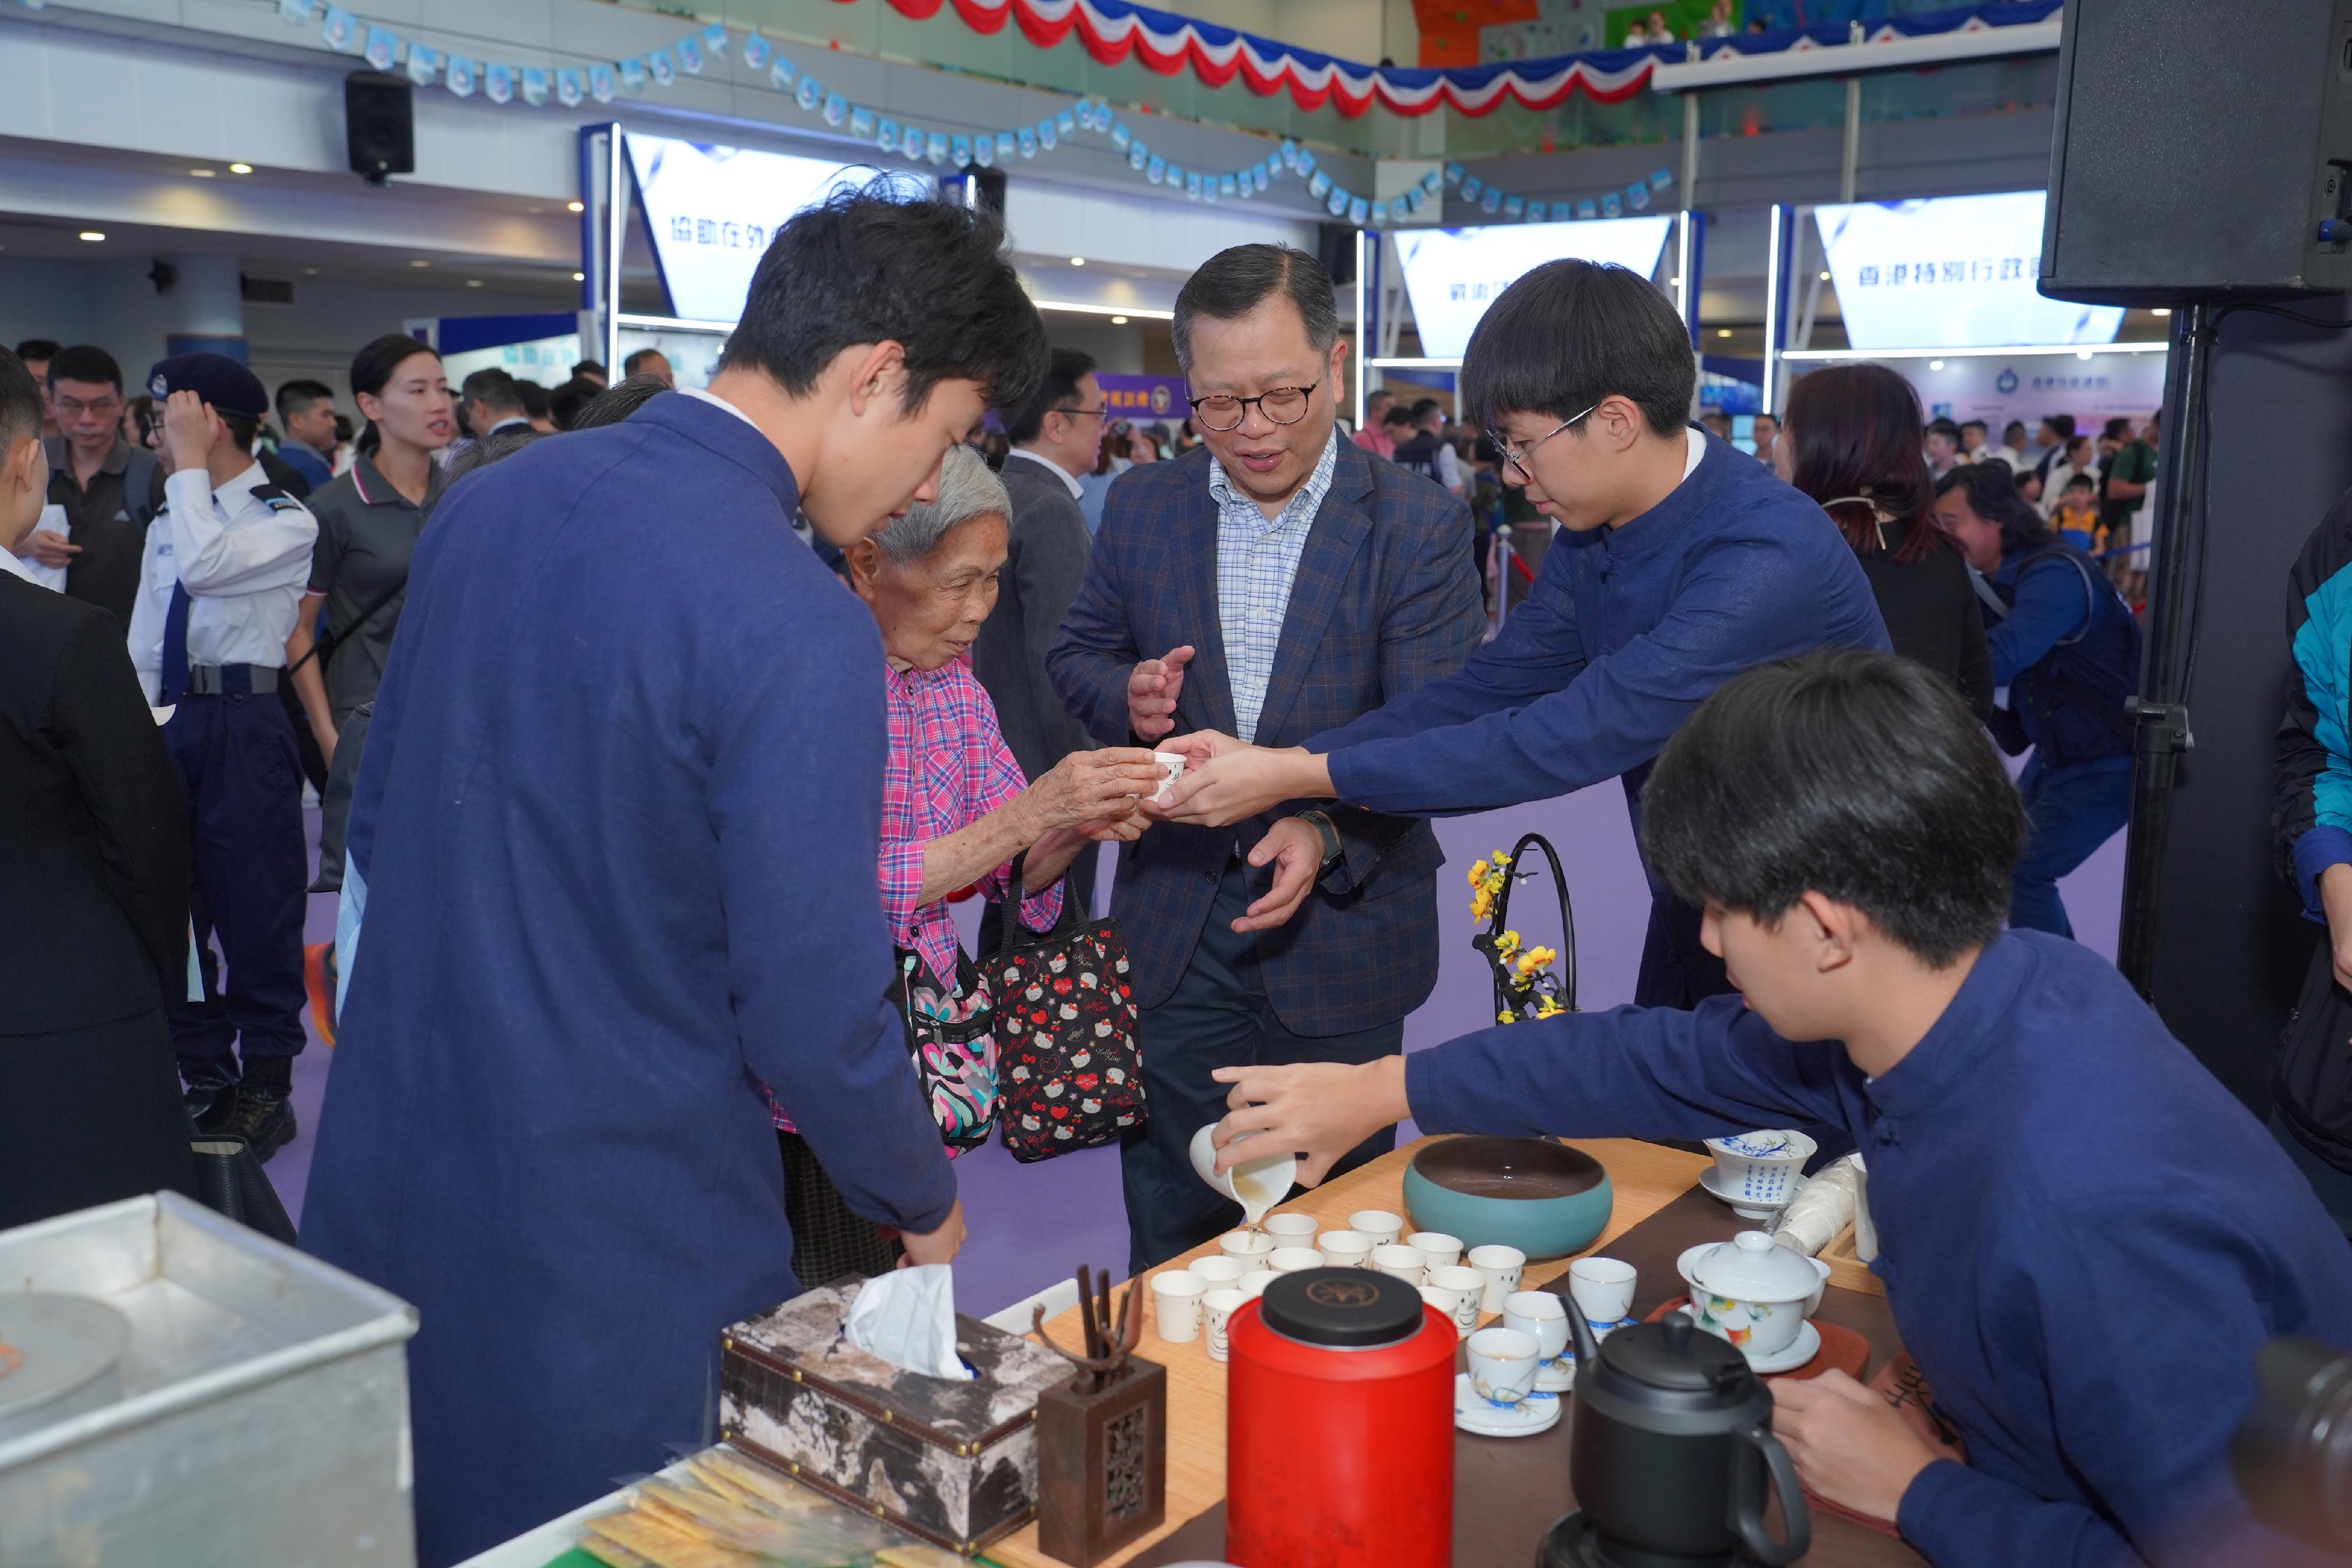 入境事務處青少年領袖團隊員向市民推廣中國茶藝及香港本土飲食文化，讓市民認識「文化安全」這個重點領域。